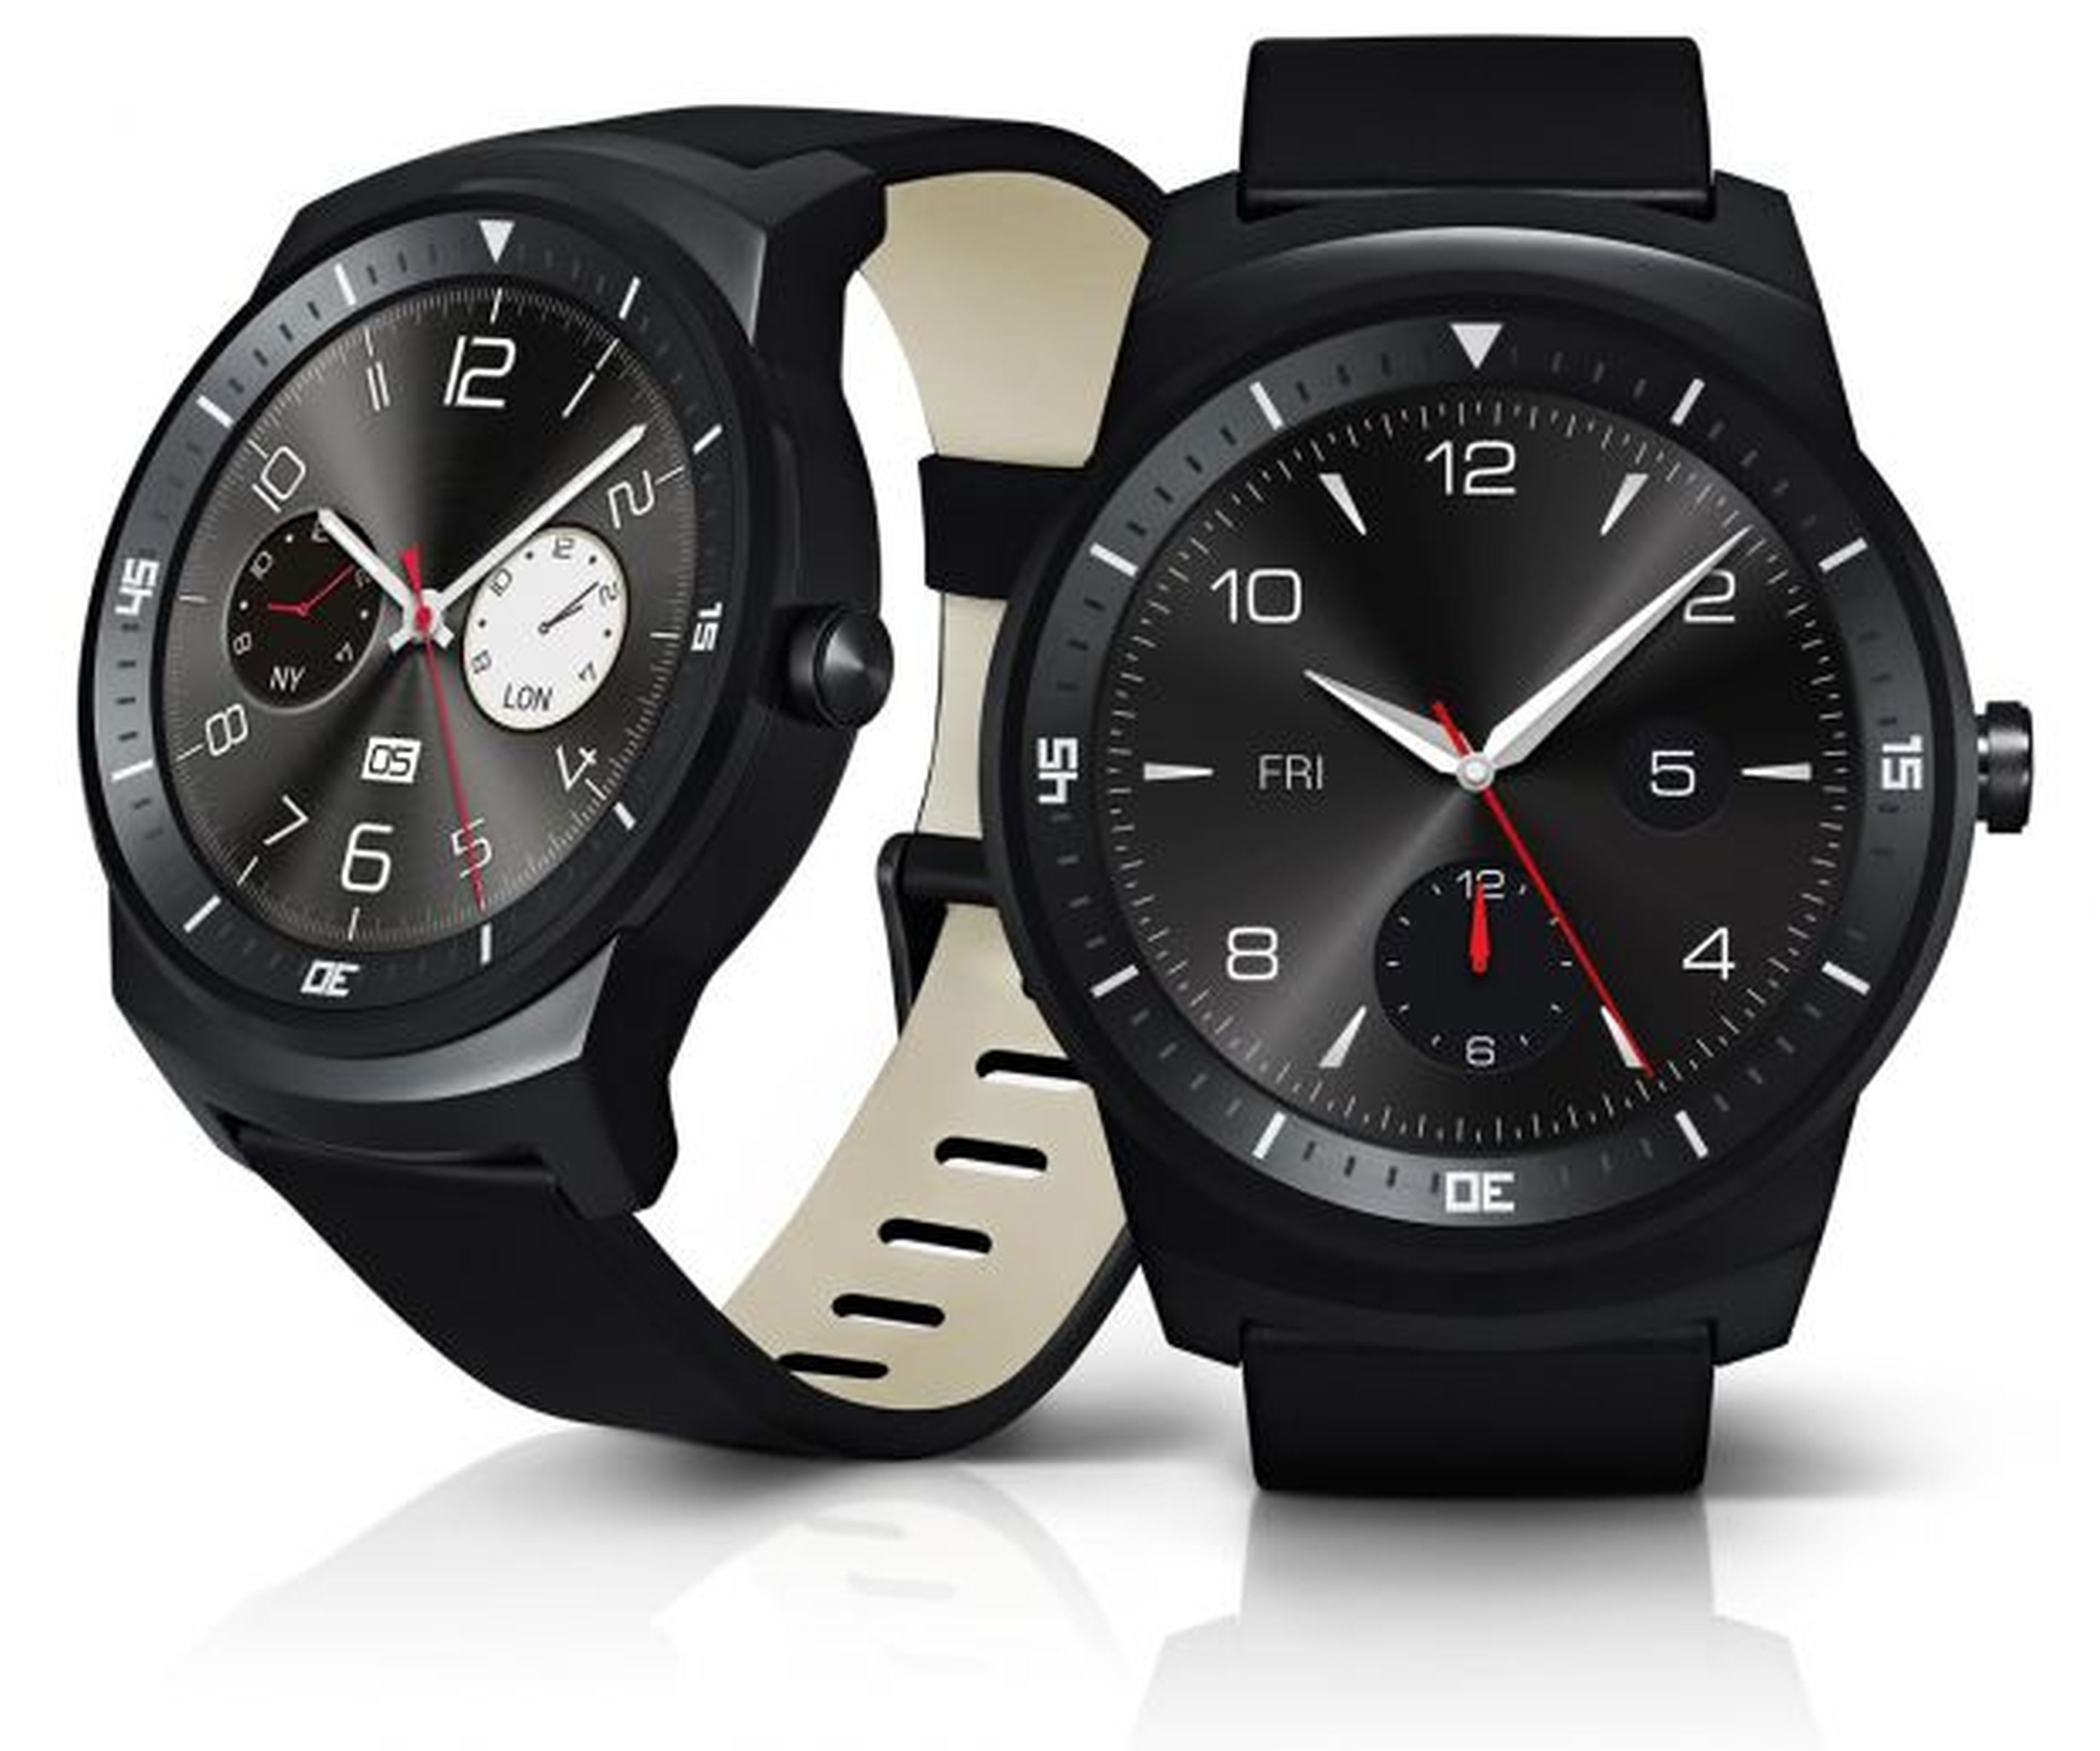 LG G Watch R IFA 2014